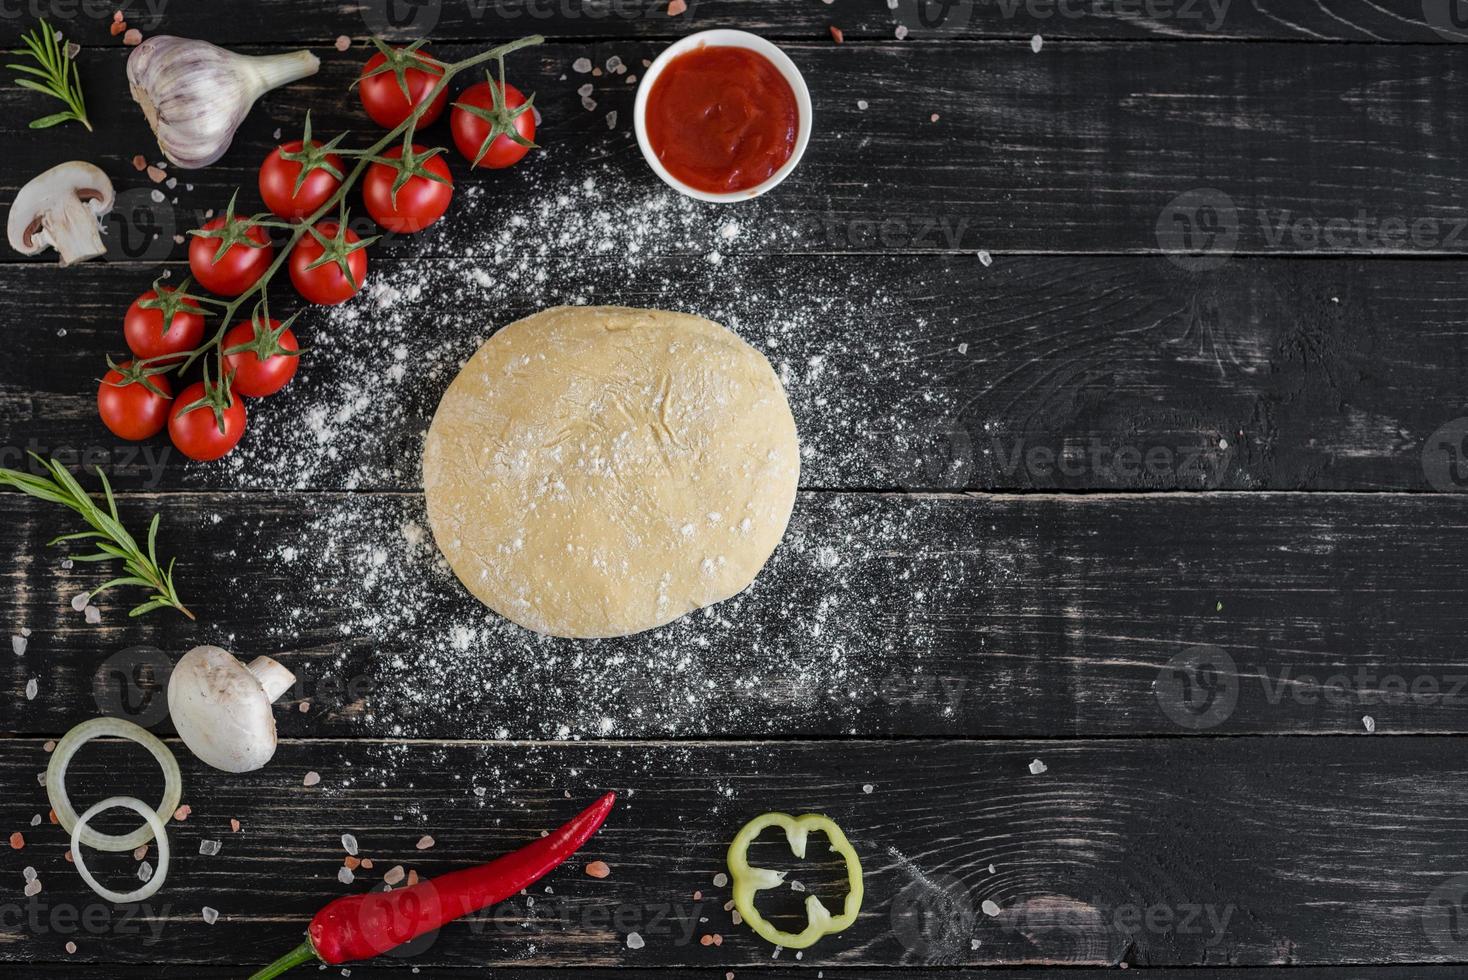 rå deg för pizza med ingredienser och kryddor på svart bakgrund foto